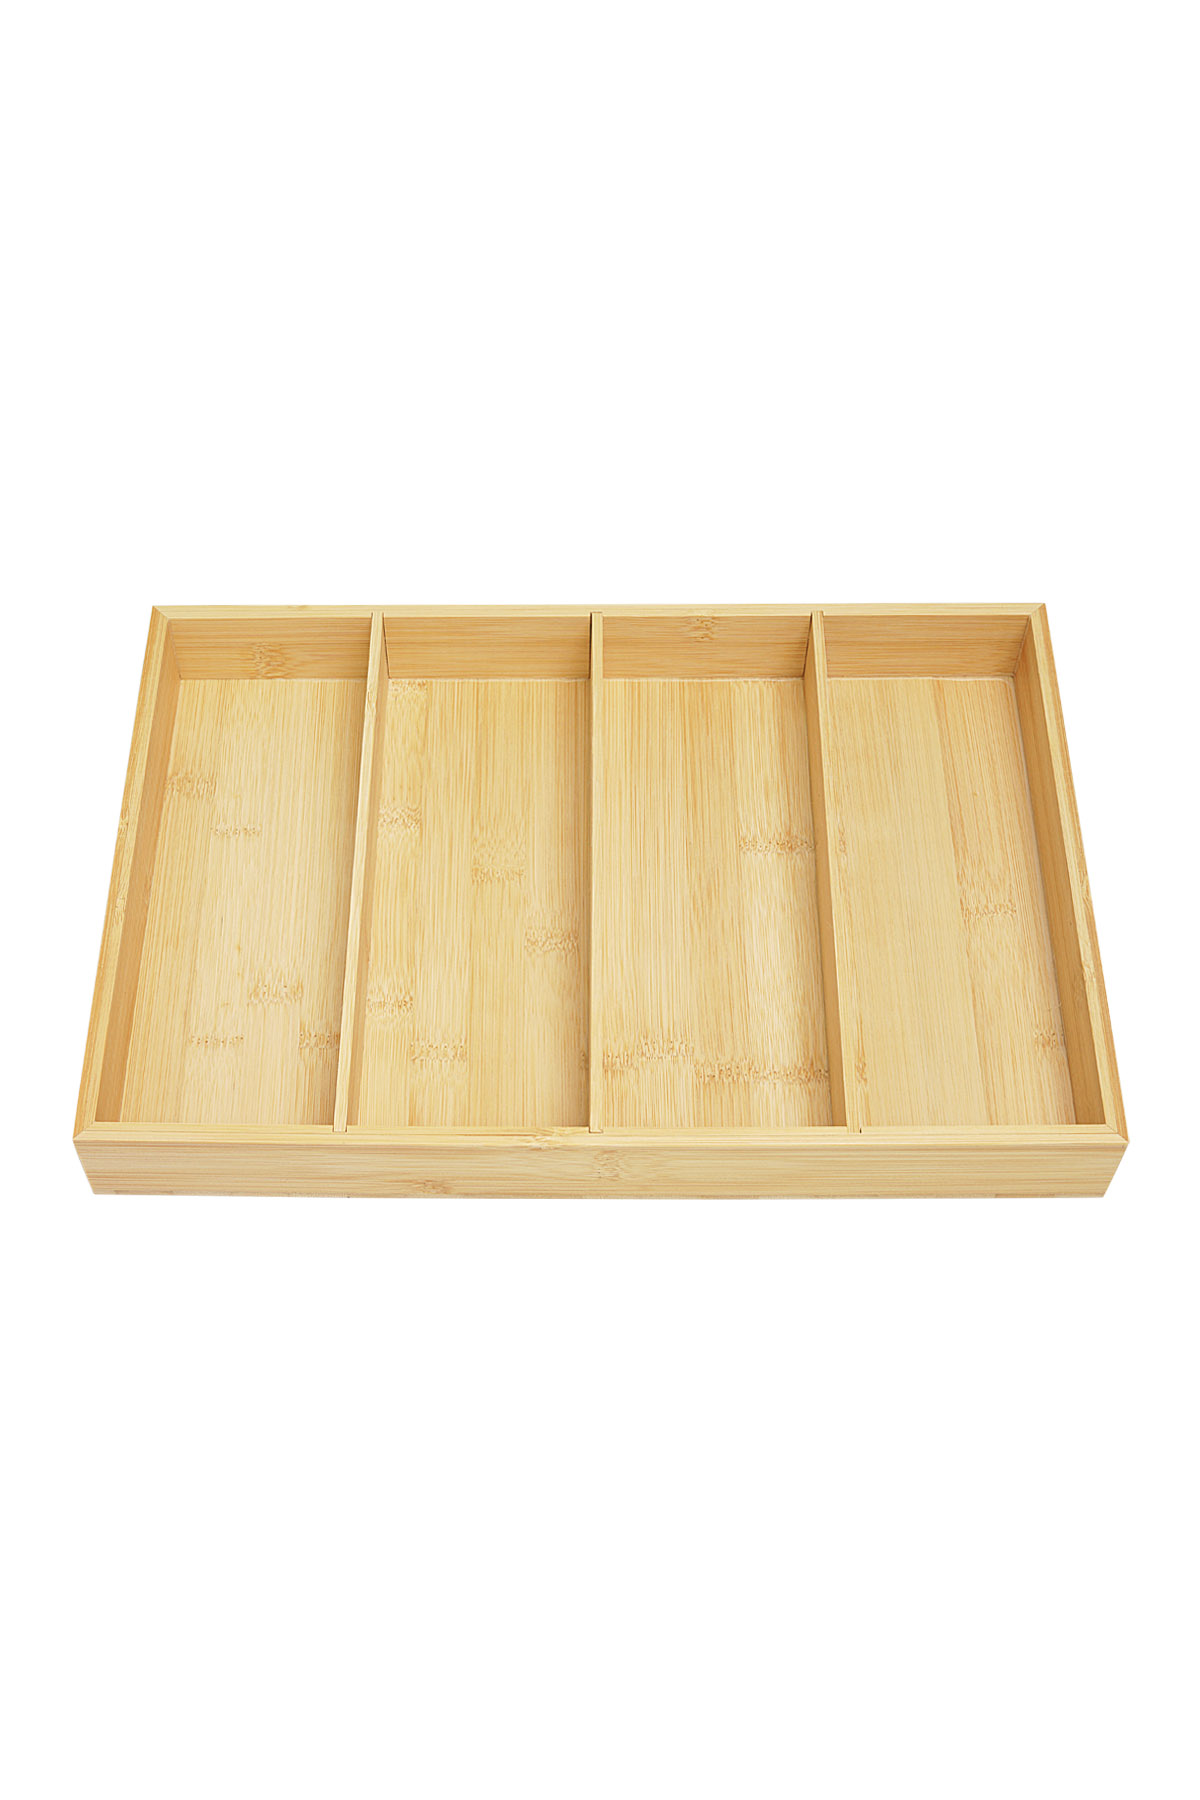 Display tray - wood